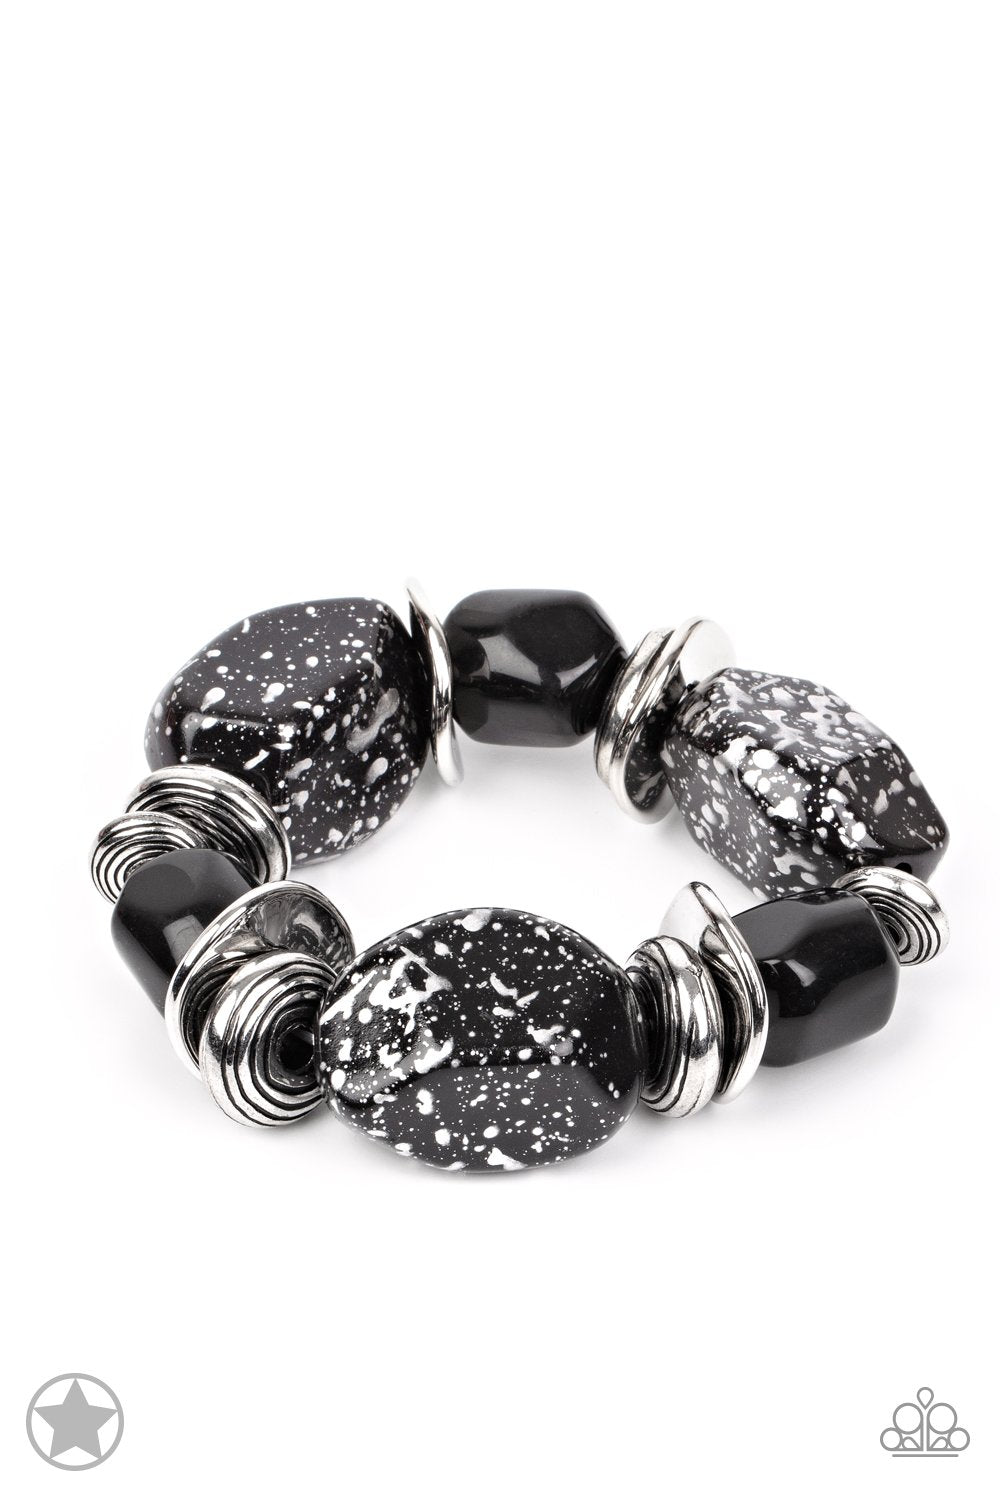 Glaze of Glory Black Chunky Bead Stretch Bracelet - Paparazzi Accessories - lightbox -CarasShop.com - $5 Jewelry by Cara Jewels